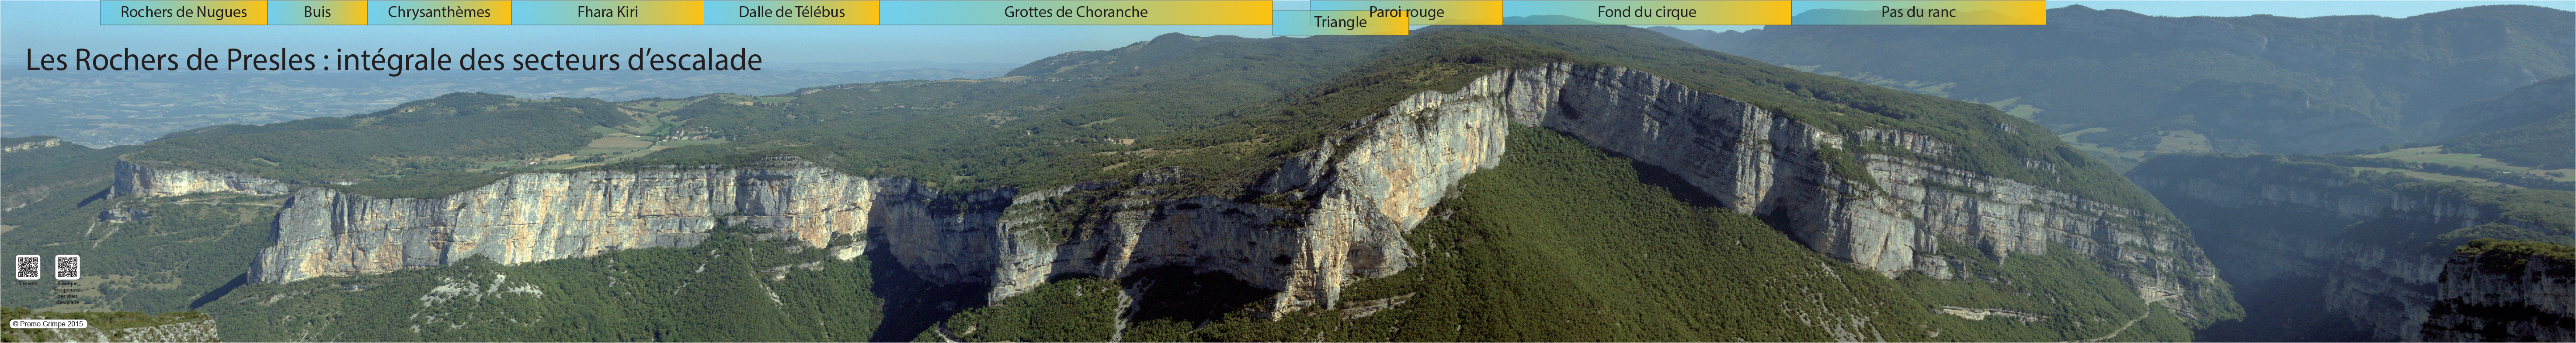 L'intÃ©grale des secteurs d'escalade des rochers de Presles